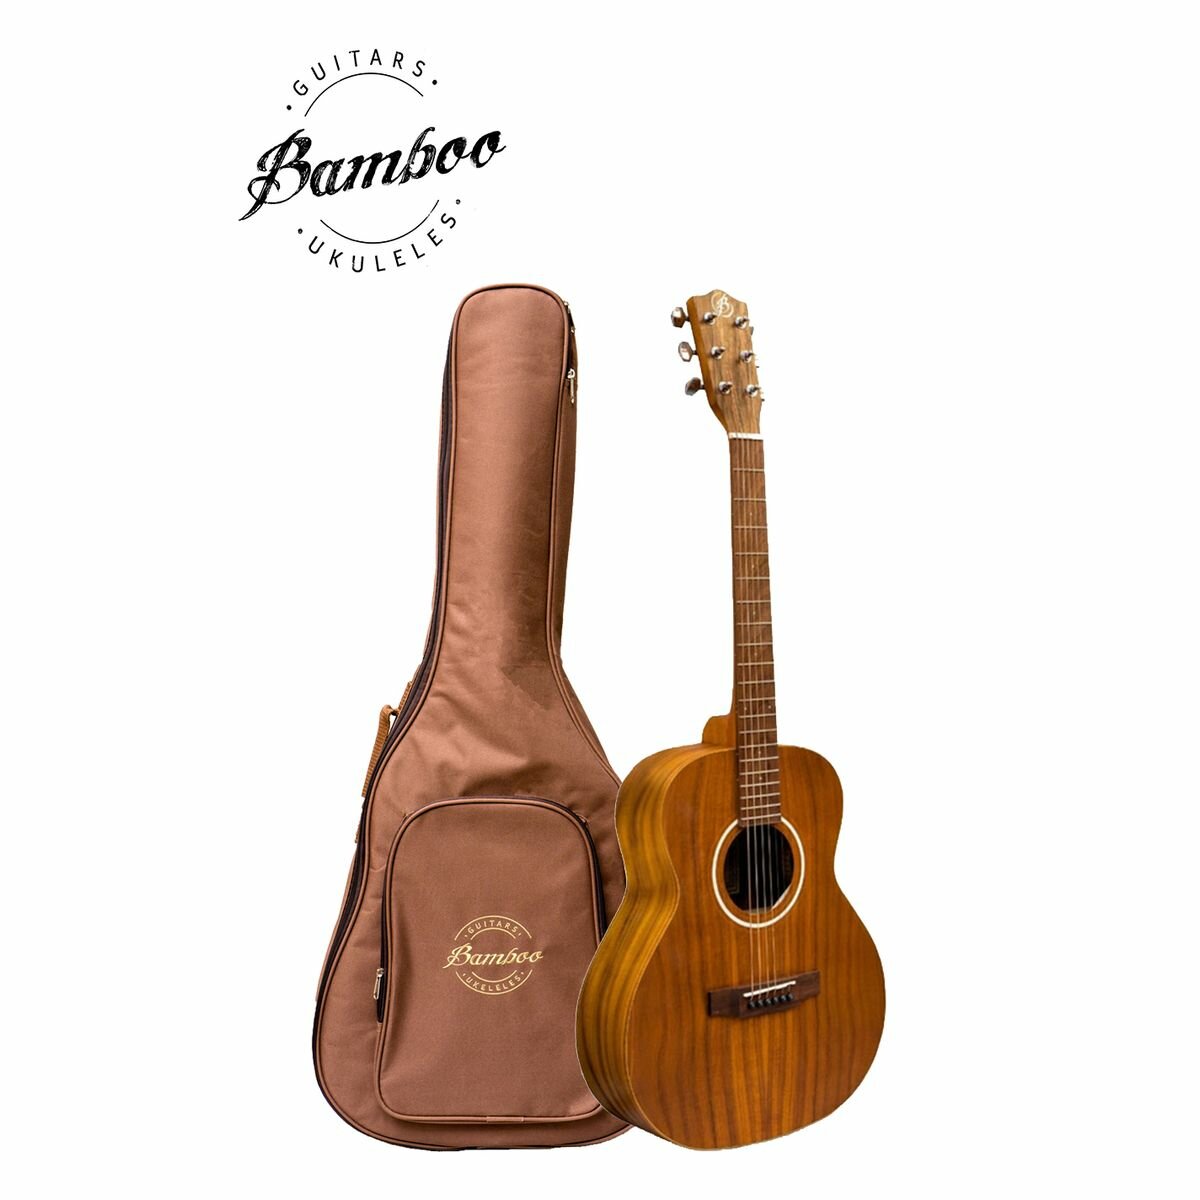 Bamboo ga-38 koa акустическая гитара с чехлом корпус коа гриф - махгони/ орех цвет натуральный